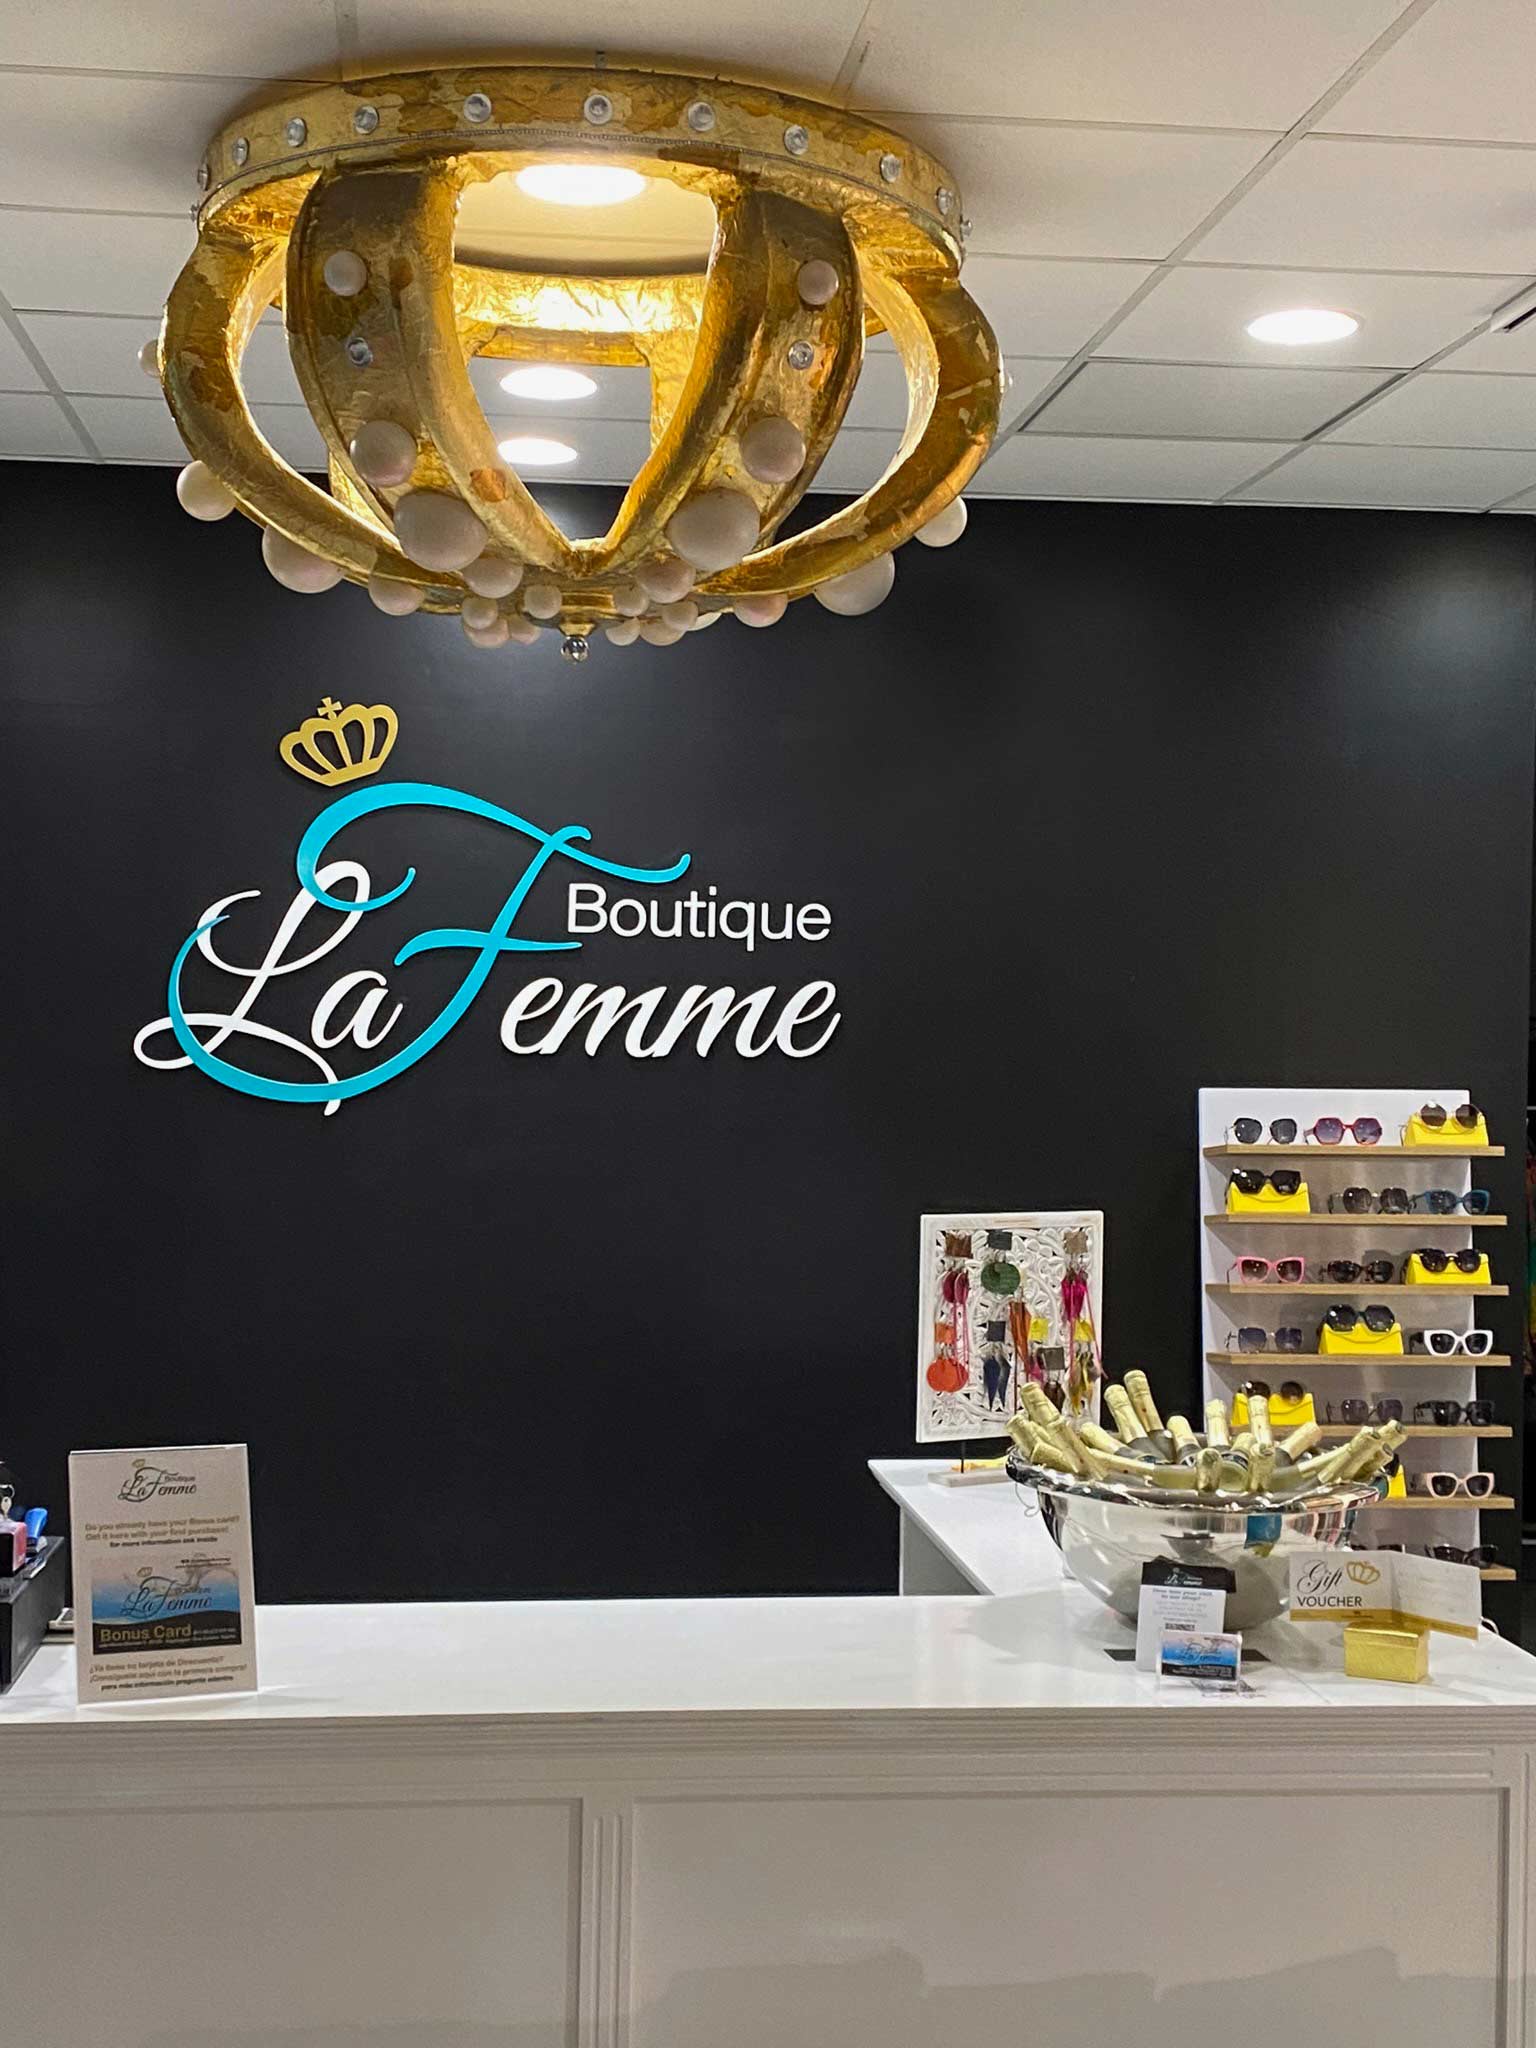 The golden crown of Boutique La Femme